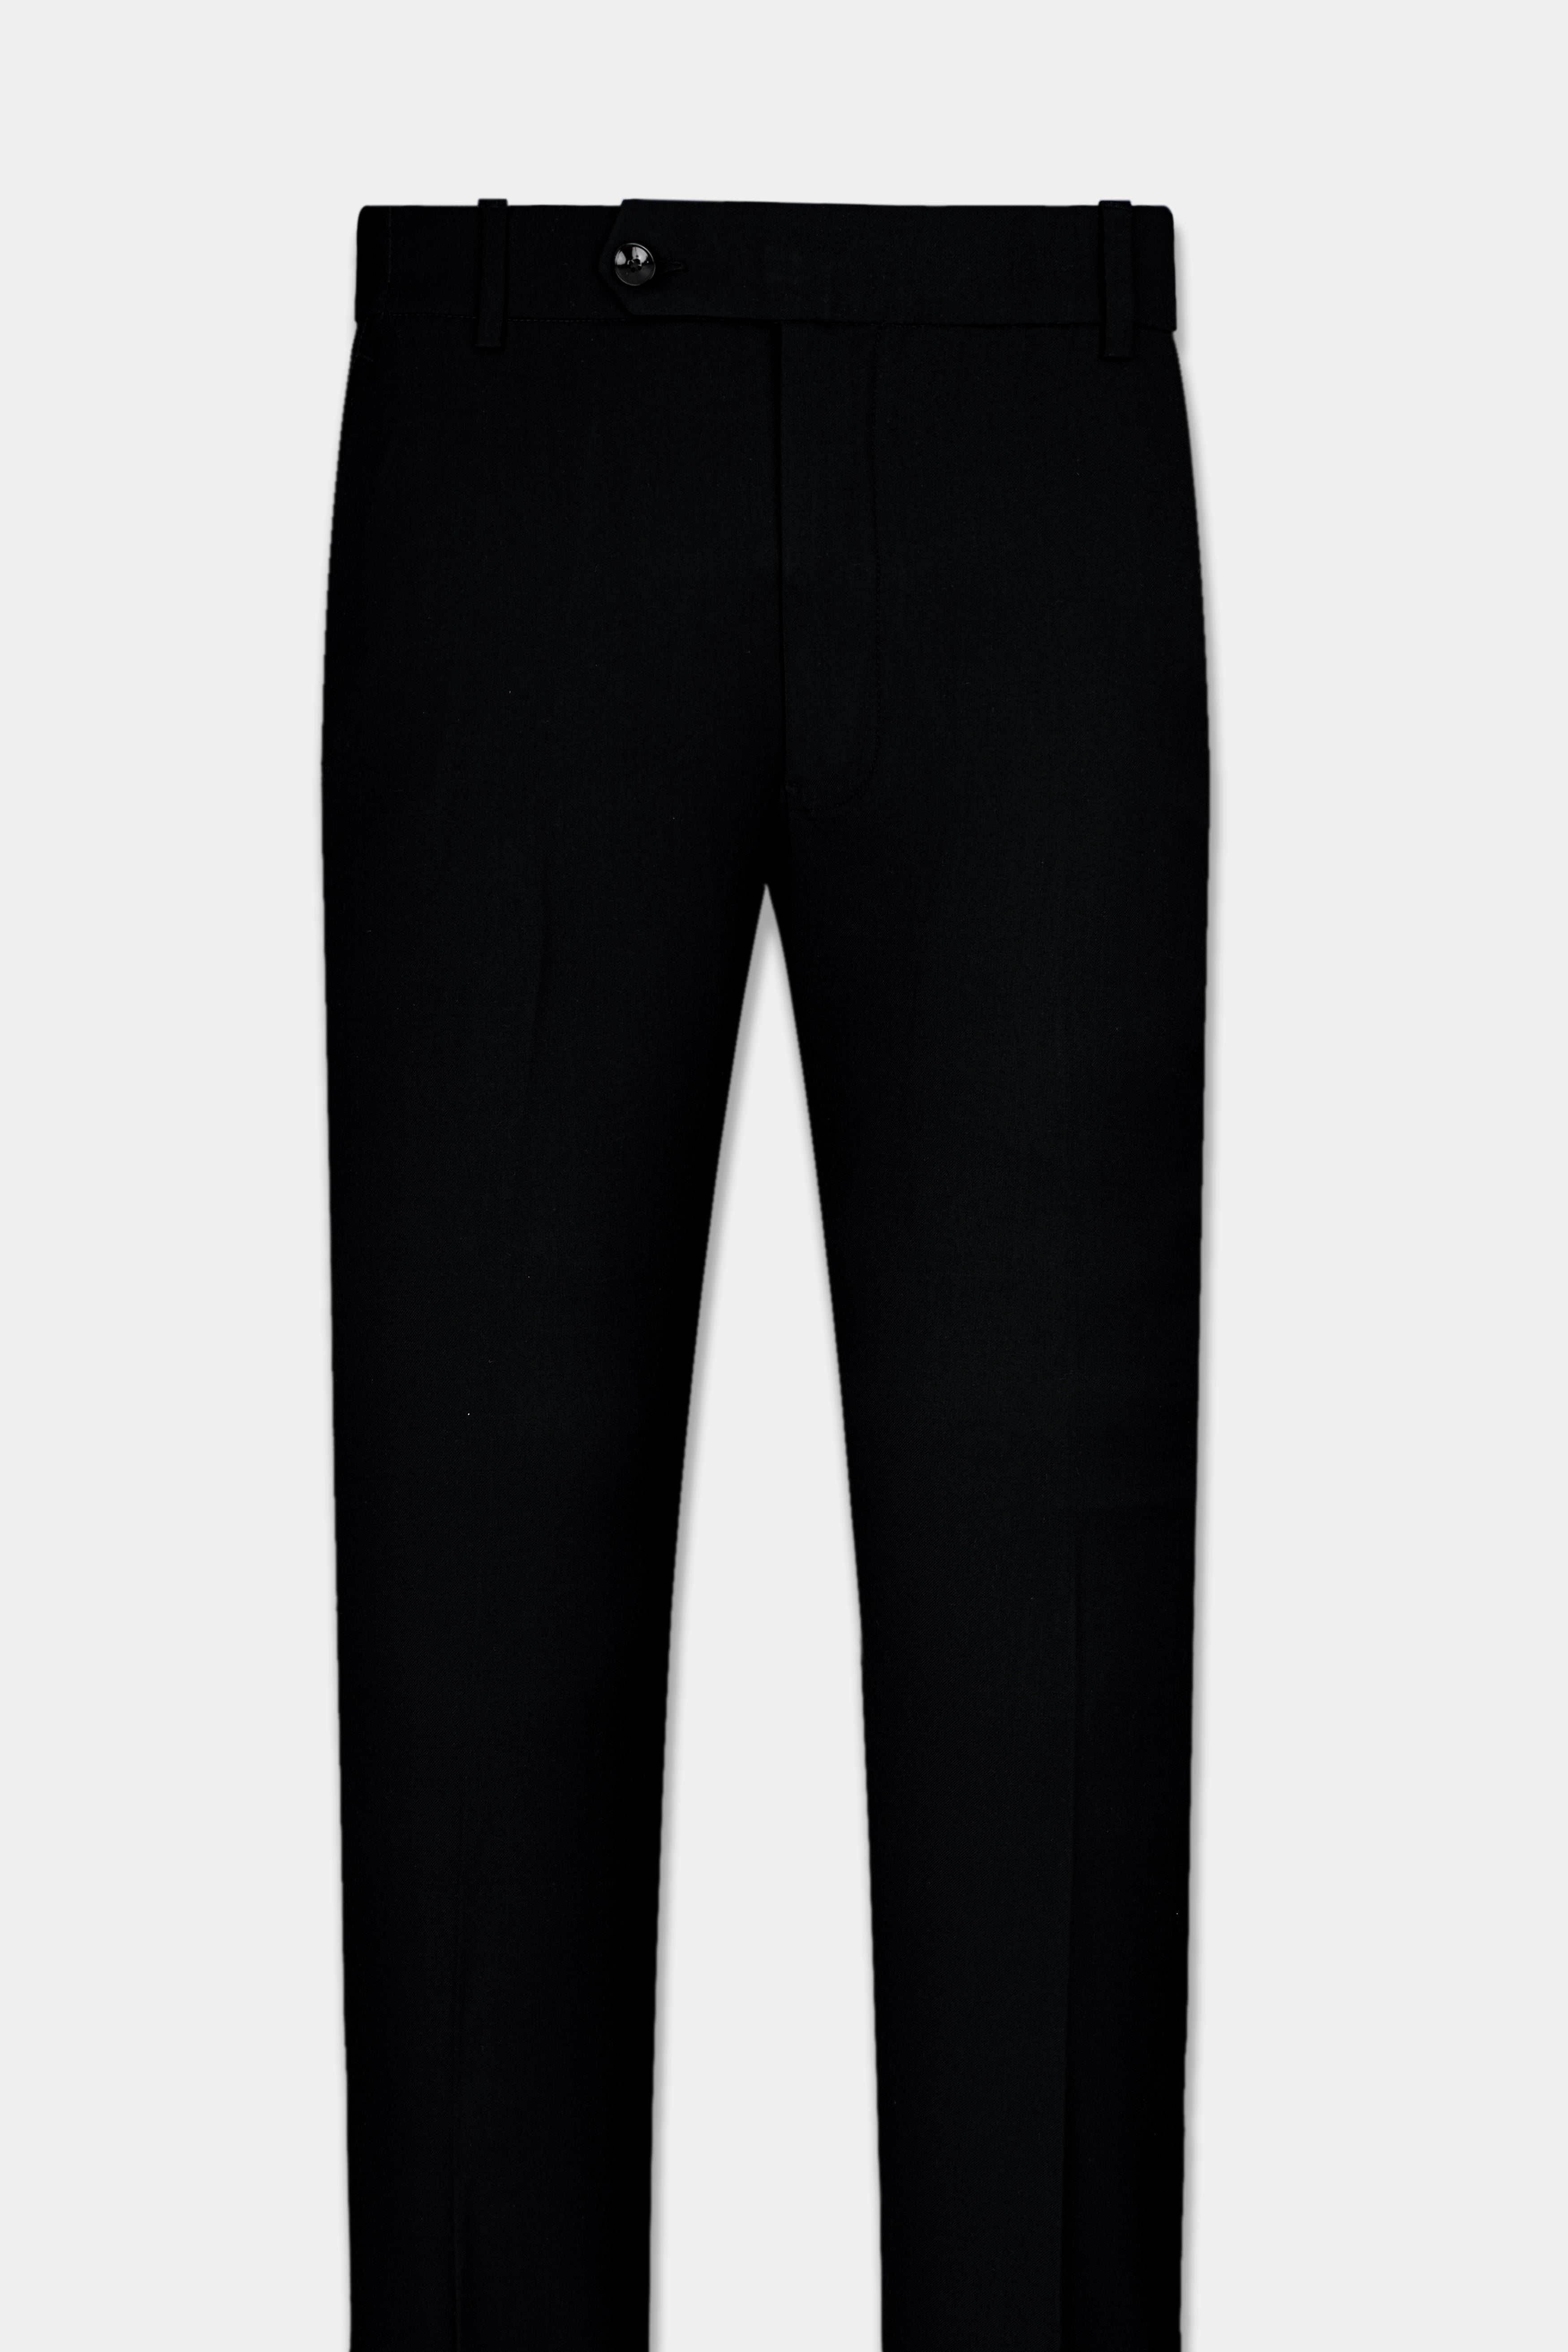 Jade Black Pilot Patterned Premium Linen Suit